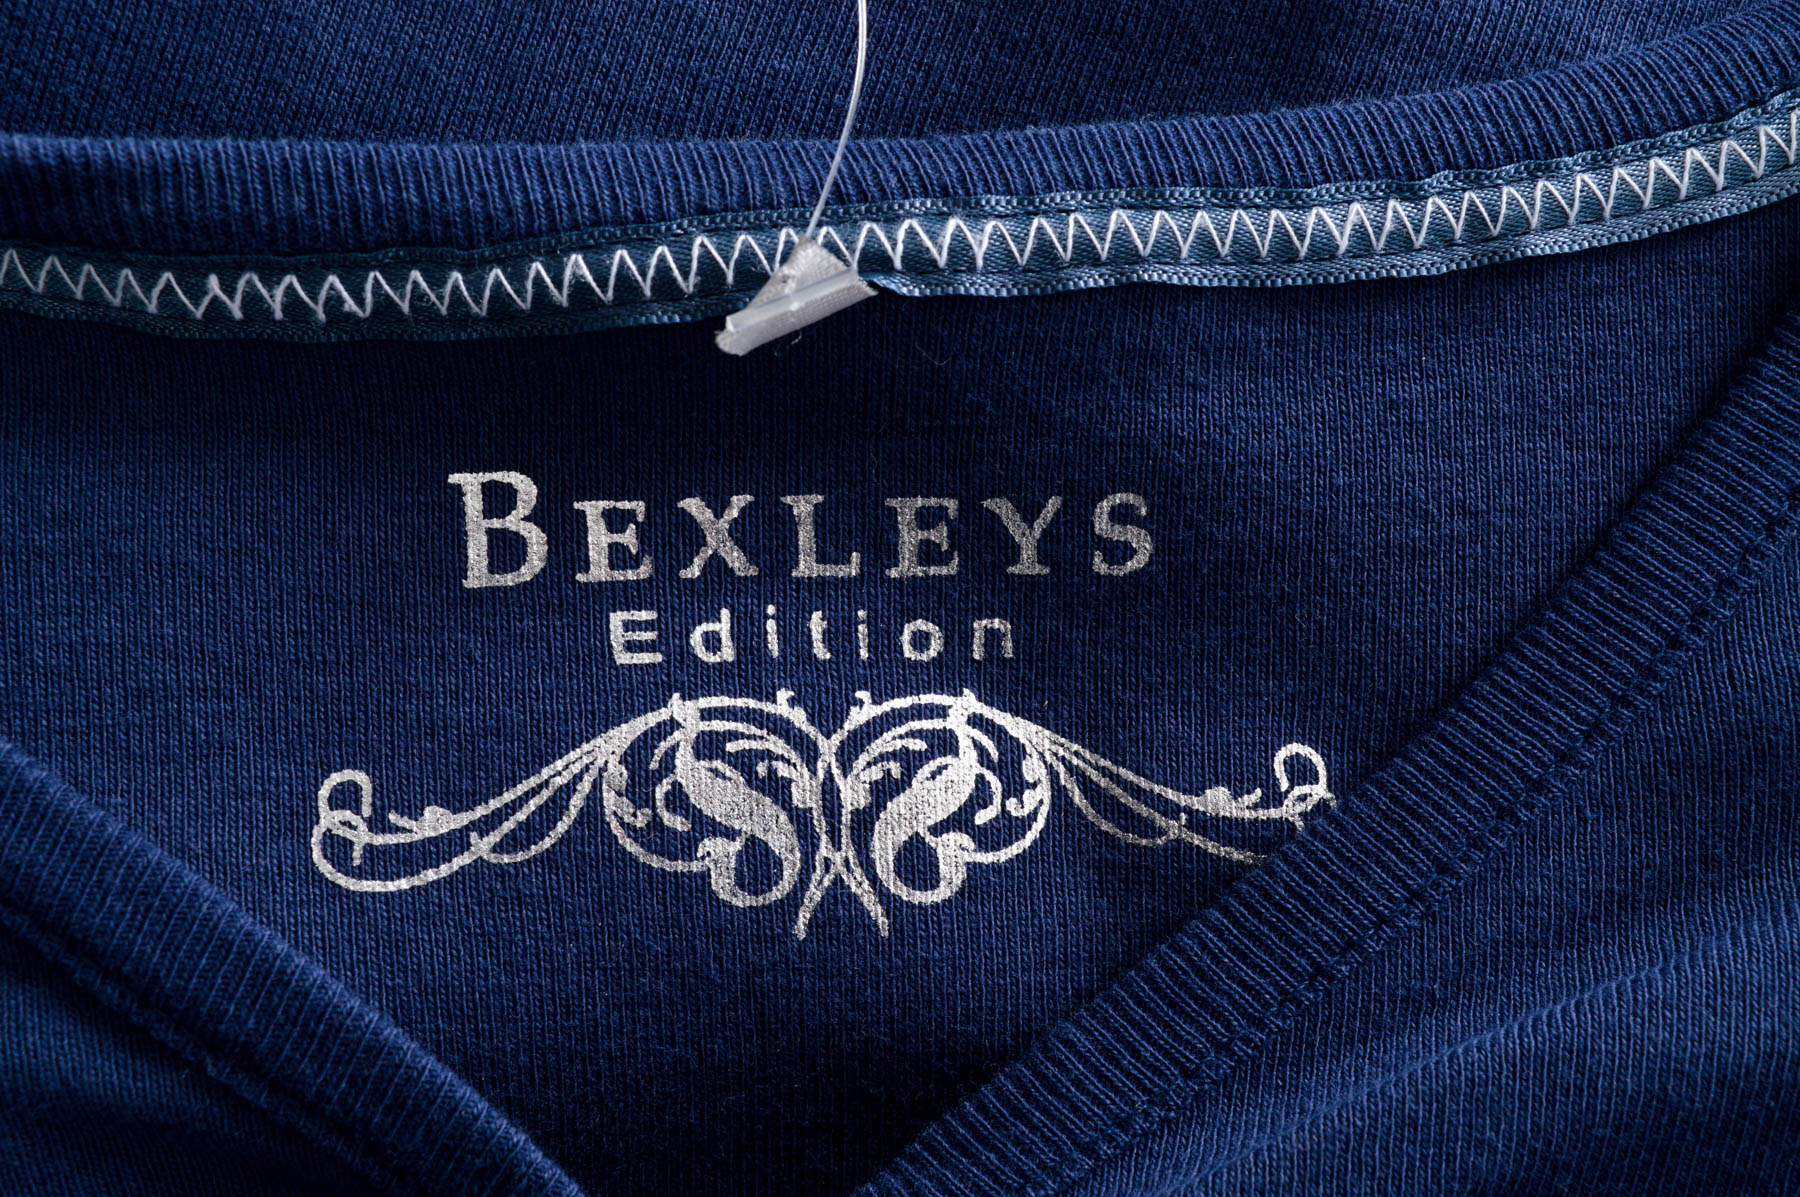 Women's t-shirt - Bexleys - 2